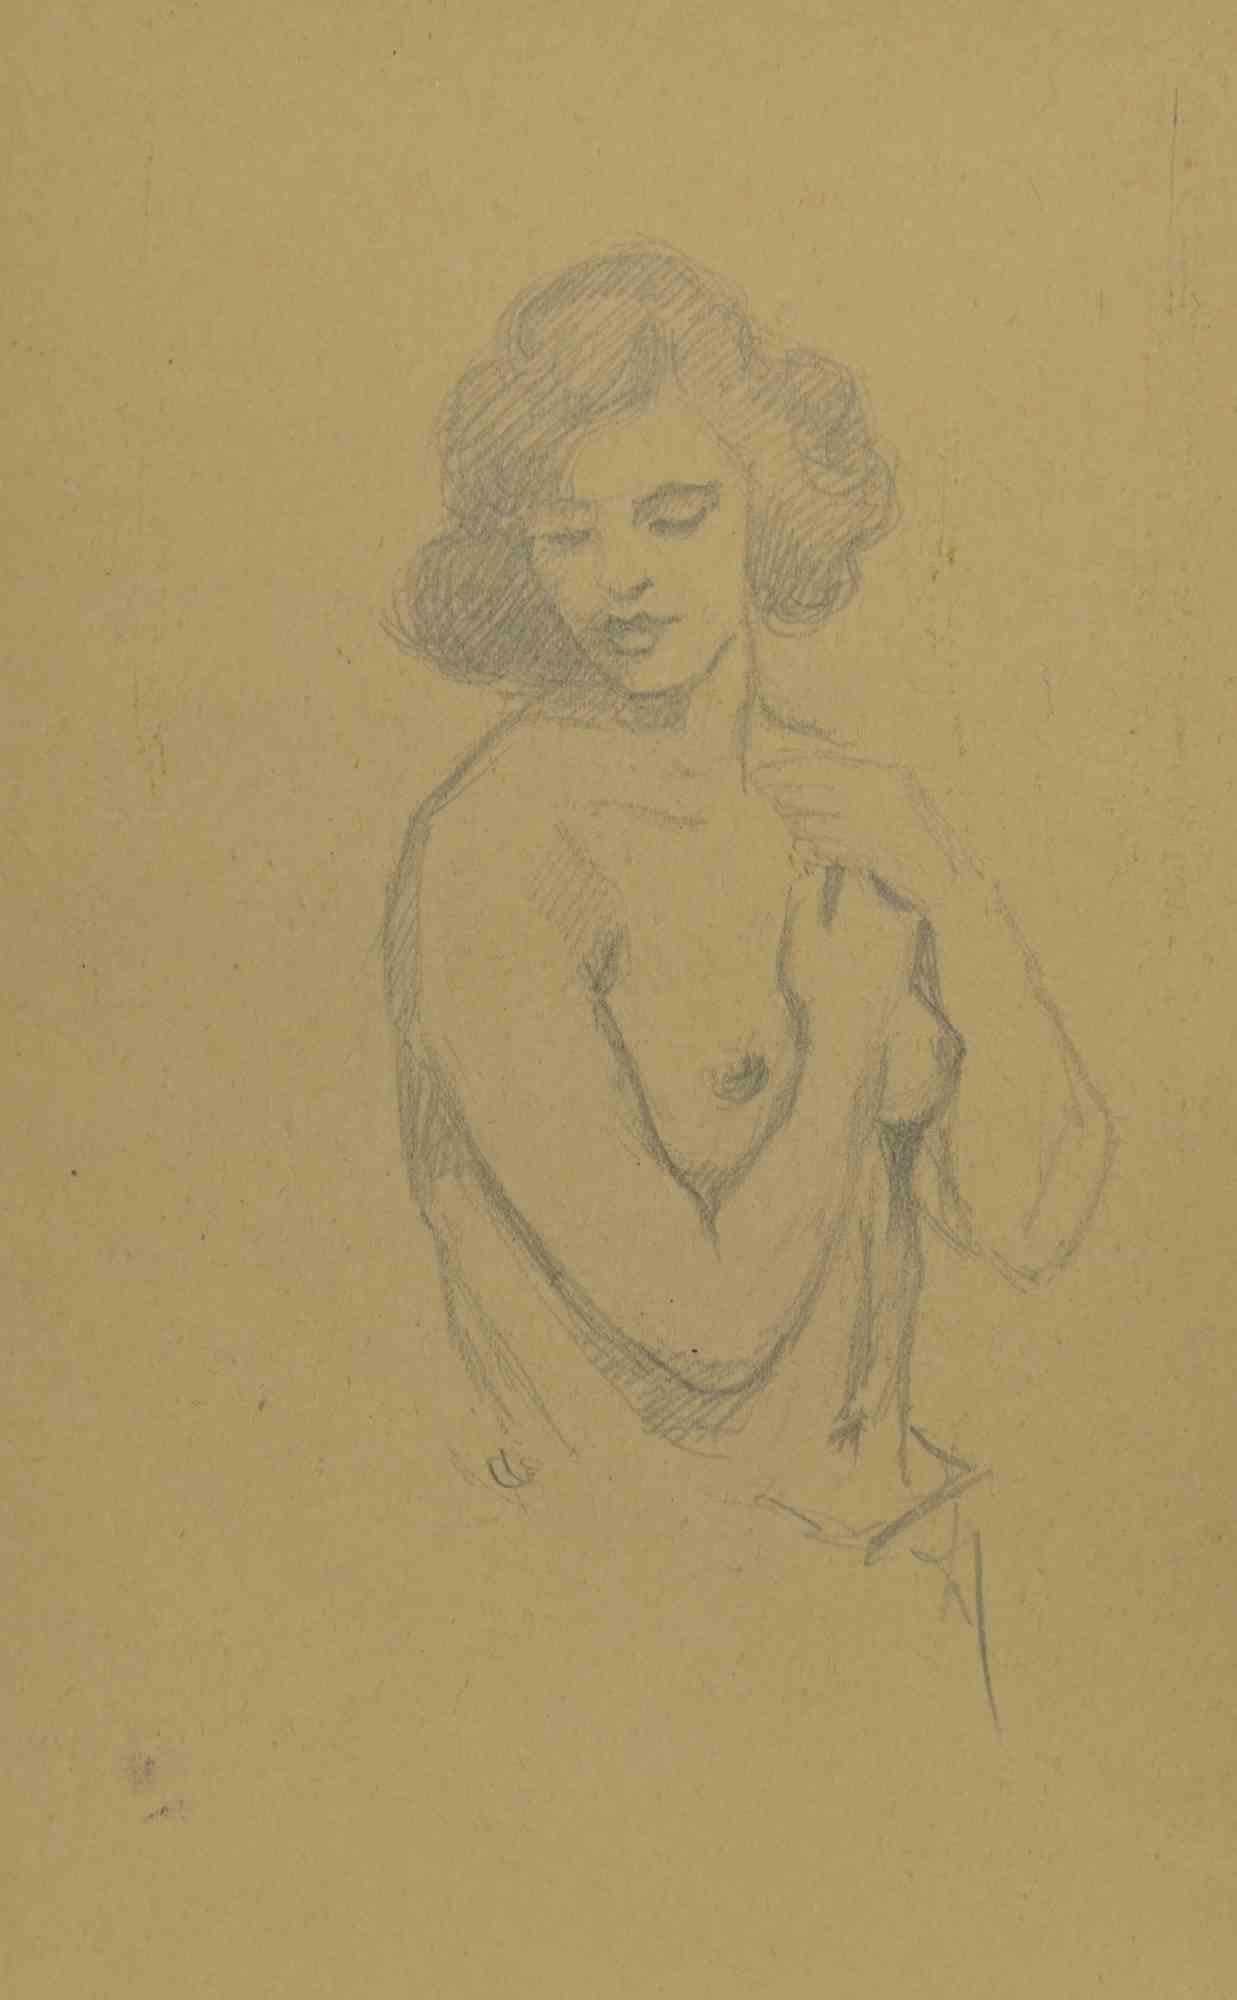 Augusto Monari Figurative Art – Aktzeichnung – Zeichnung von Mino Maccari – frühes 20. Jahrhundert